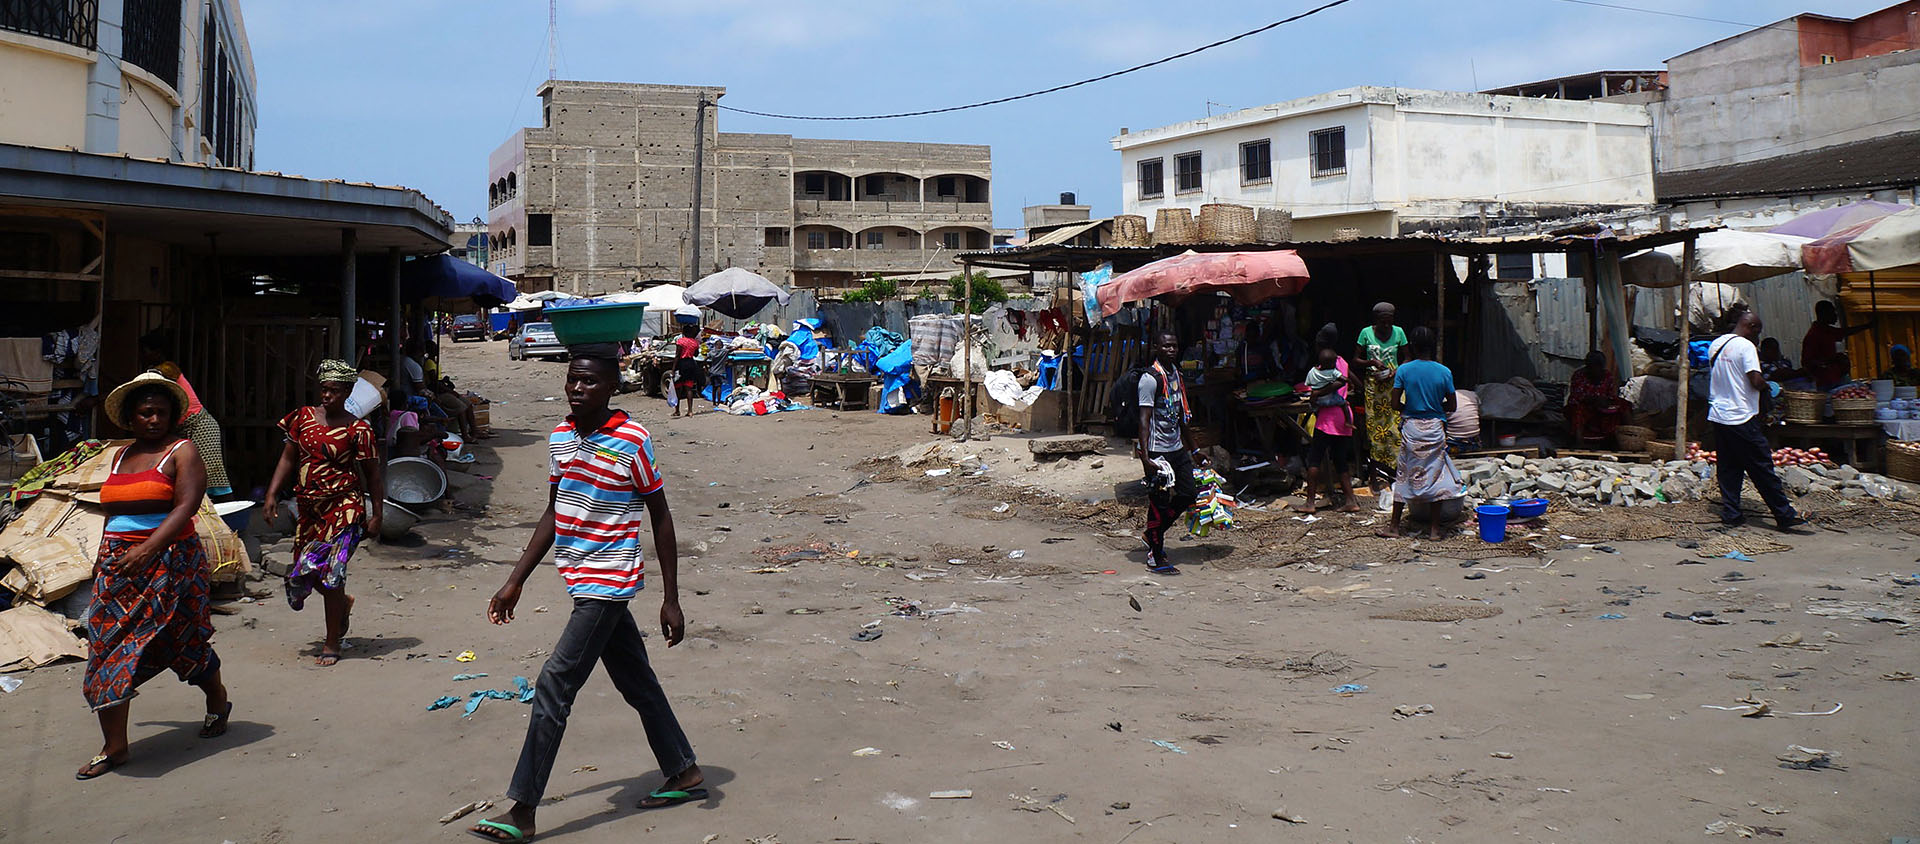 Le Togo, ici la capitale Lomé, est un des pays les plus pauvres d'Afrique | © Flickr/DLR/CC BY 2.0